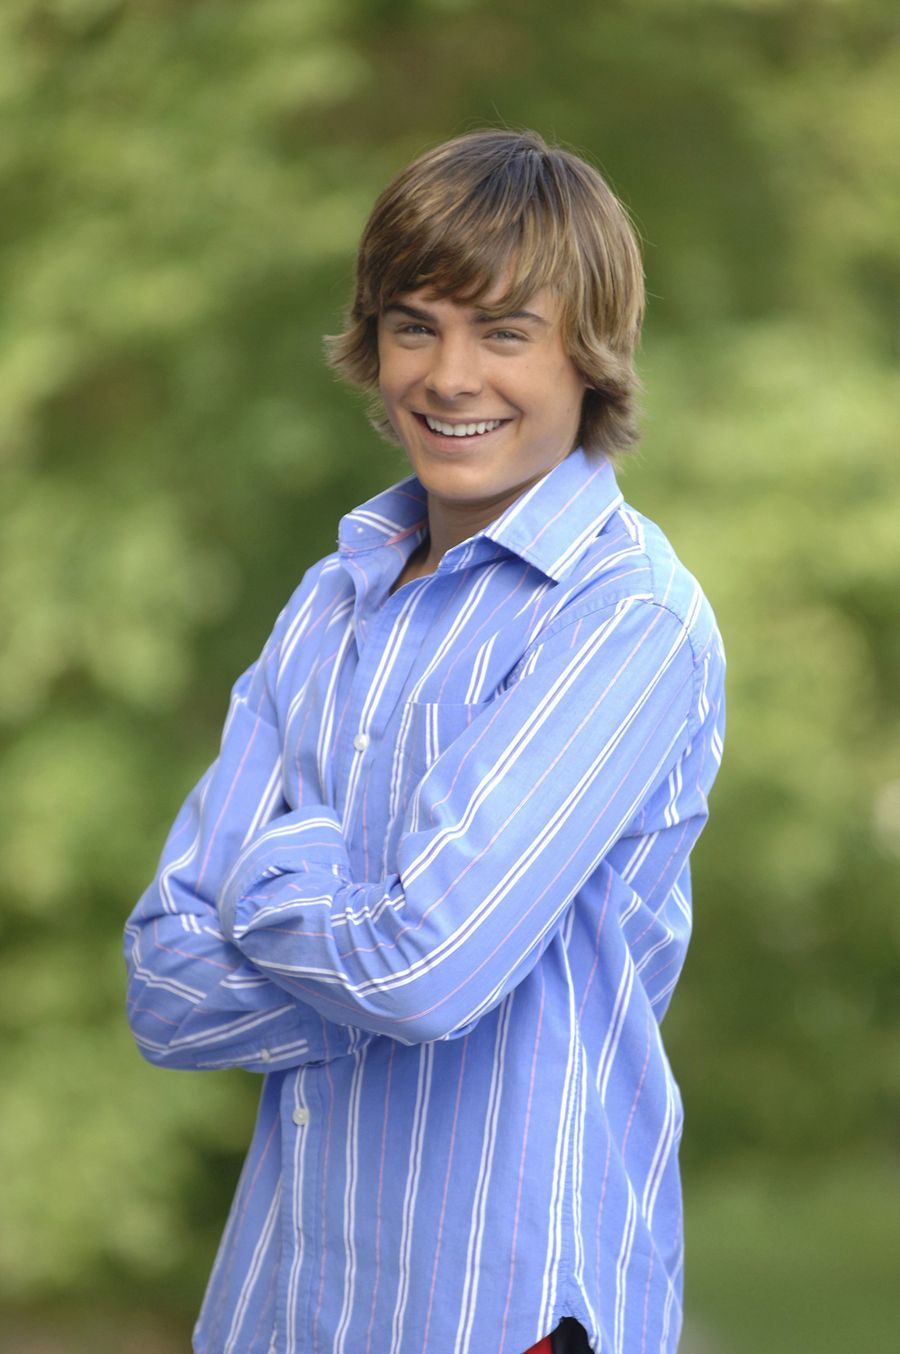 Nama Zac Efron mulai dikenal setelah dia membintangi drama High School Musical. Ini penampilan Zac saat berpose untuk poster drama musikal itu di 2006. Foto: dok. Disney Channel